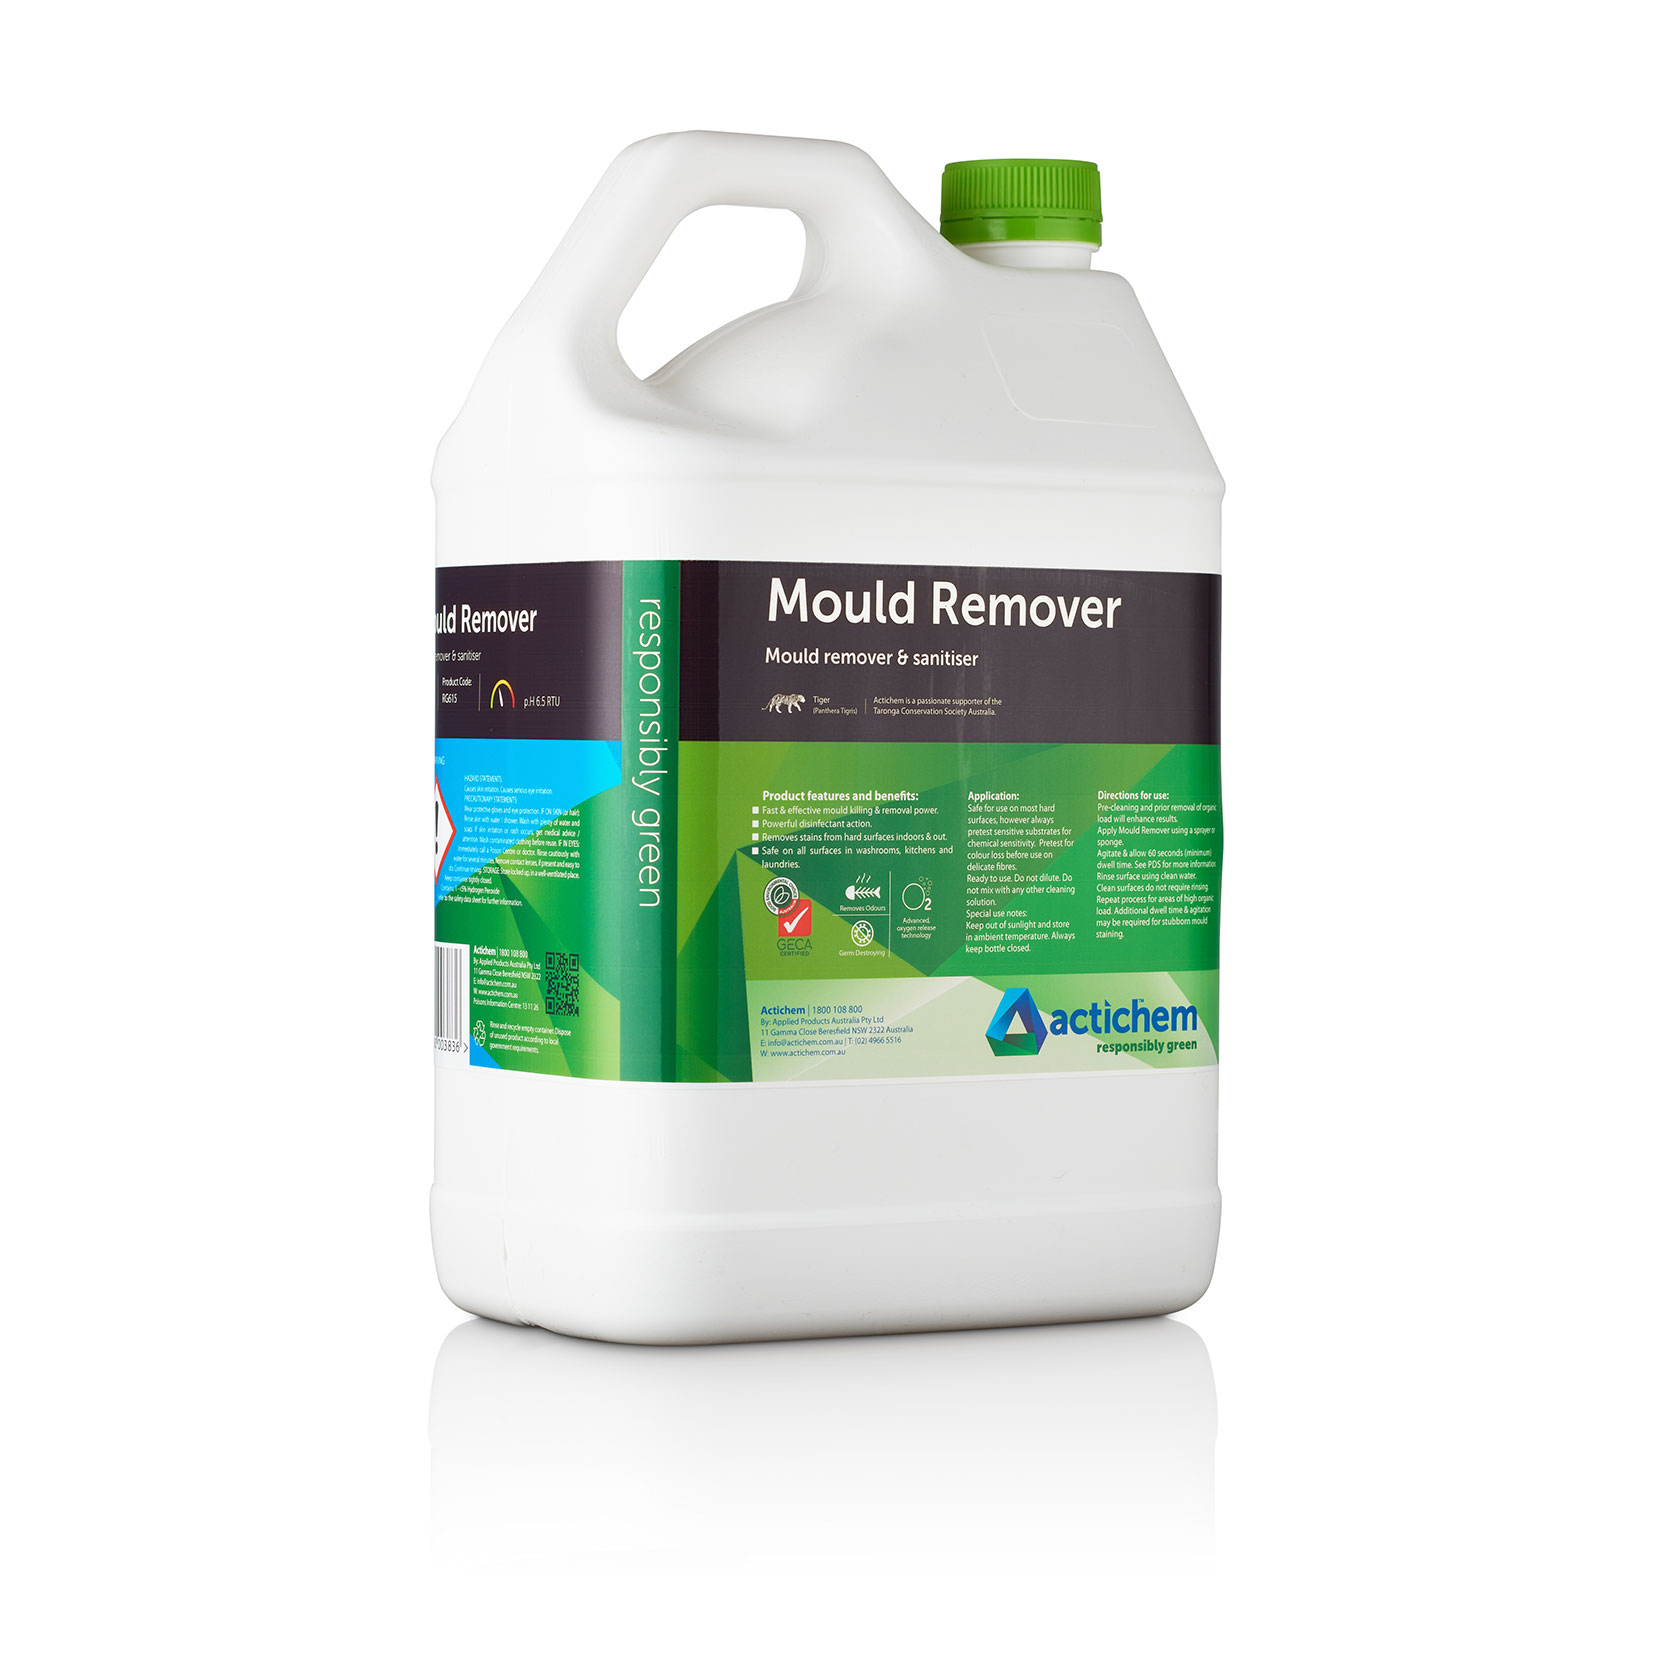 Actichem Mould Remover Mould remover & sanitiser for washrooms